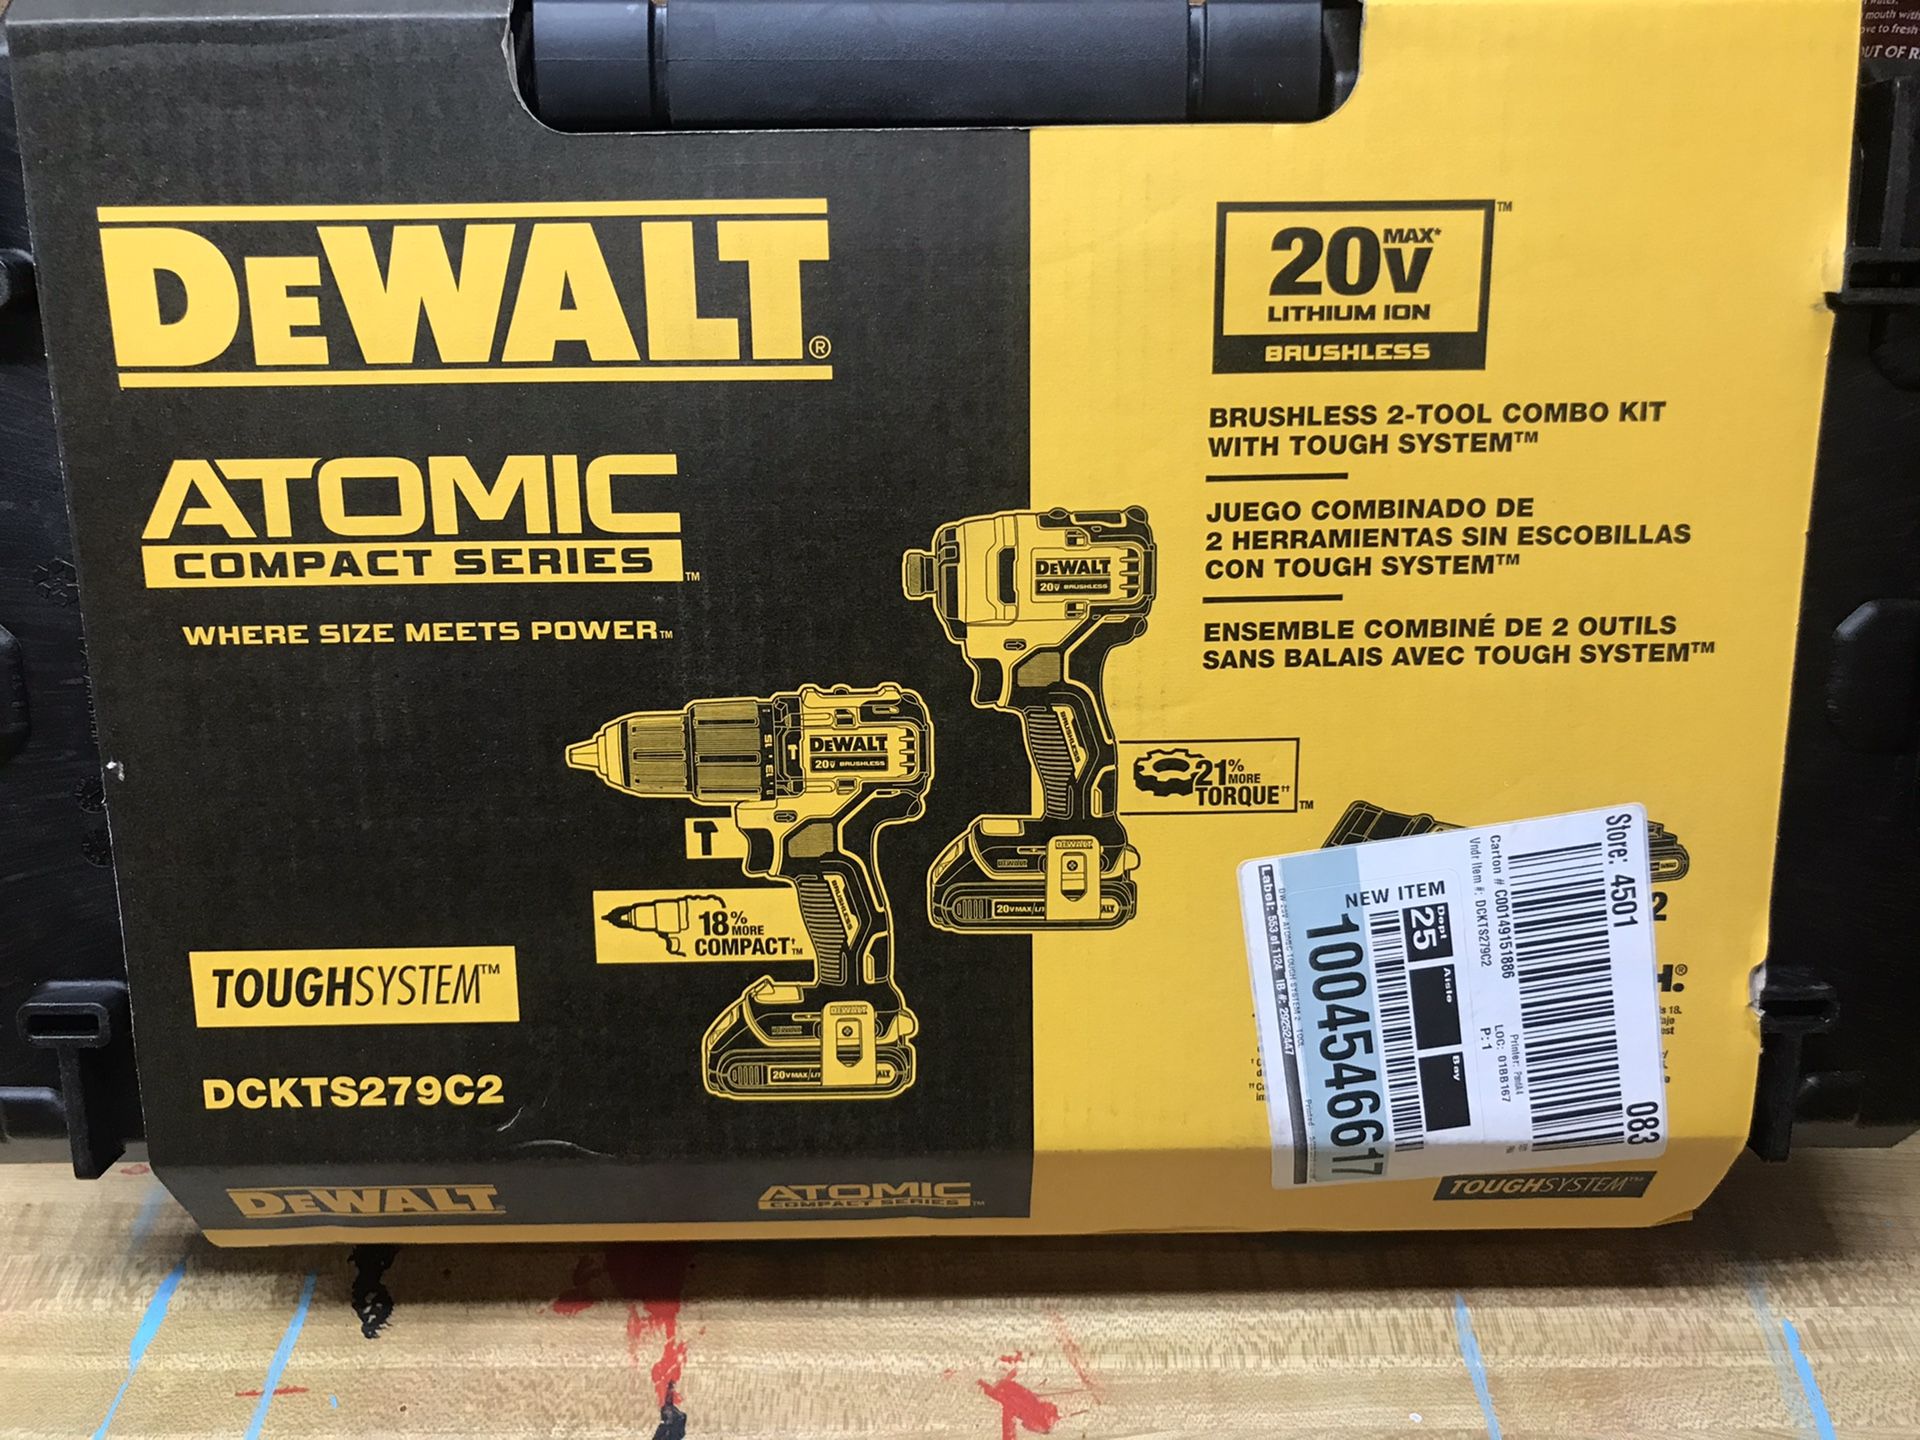 Brand new Dewalt Atomic hammer drill impact driver 20V brushless